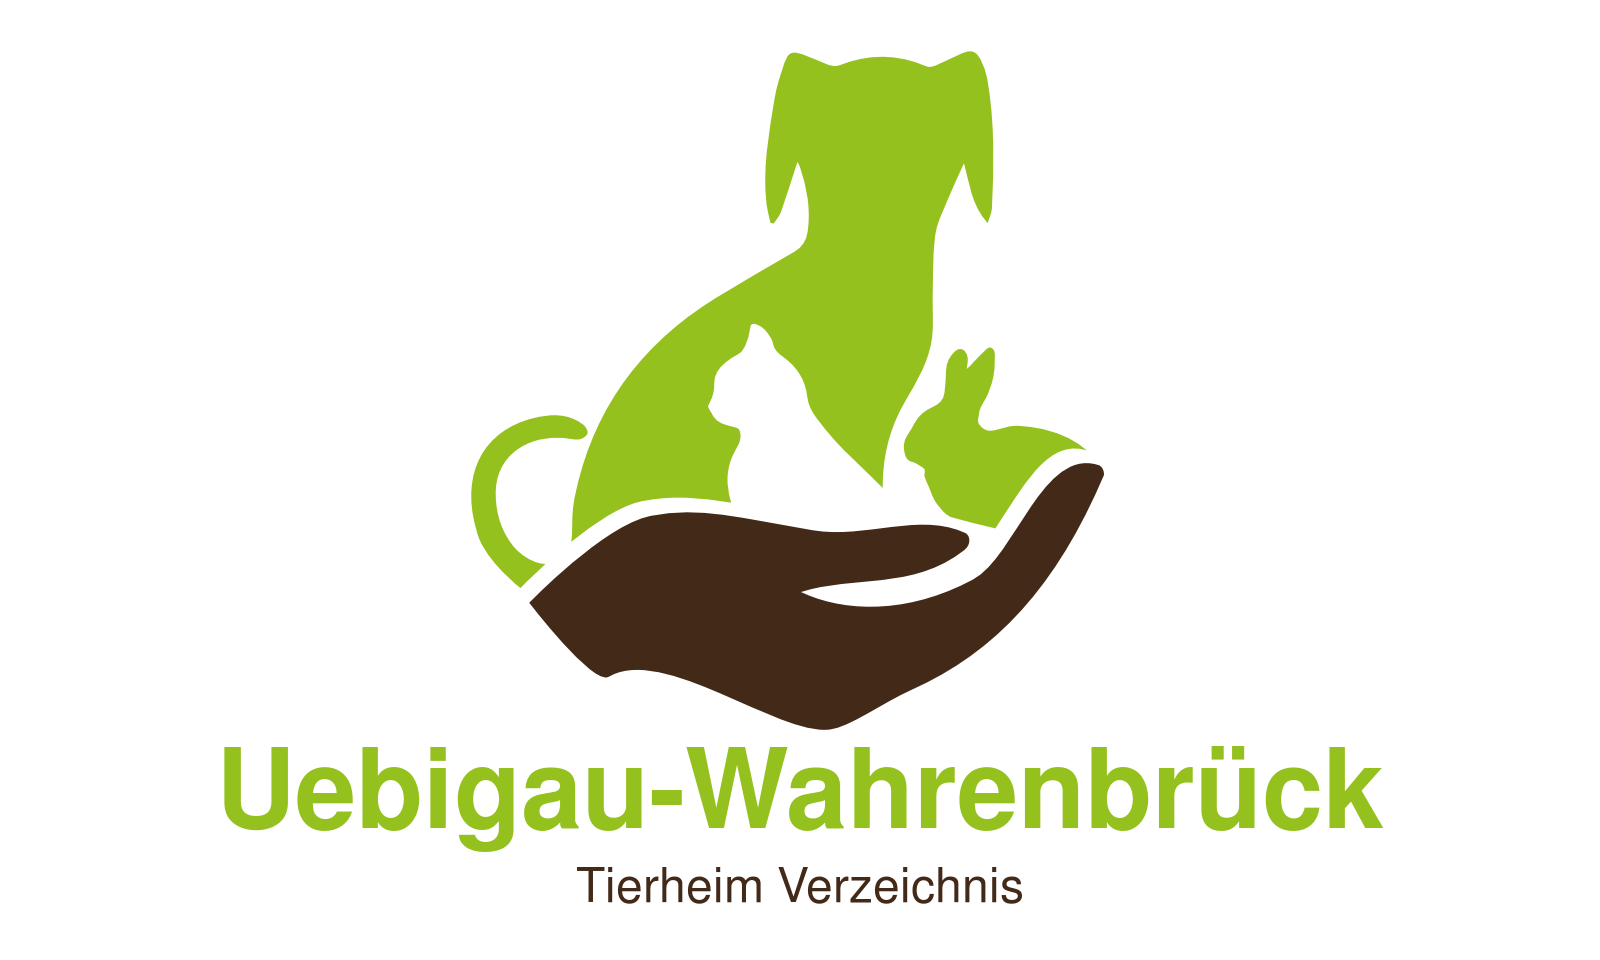 Tierheim Uebigau-Wahrenbrück